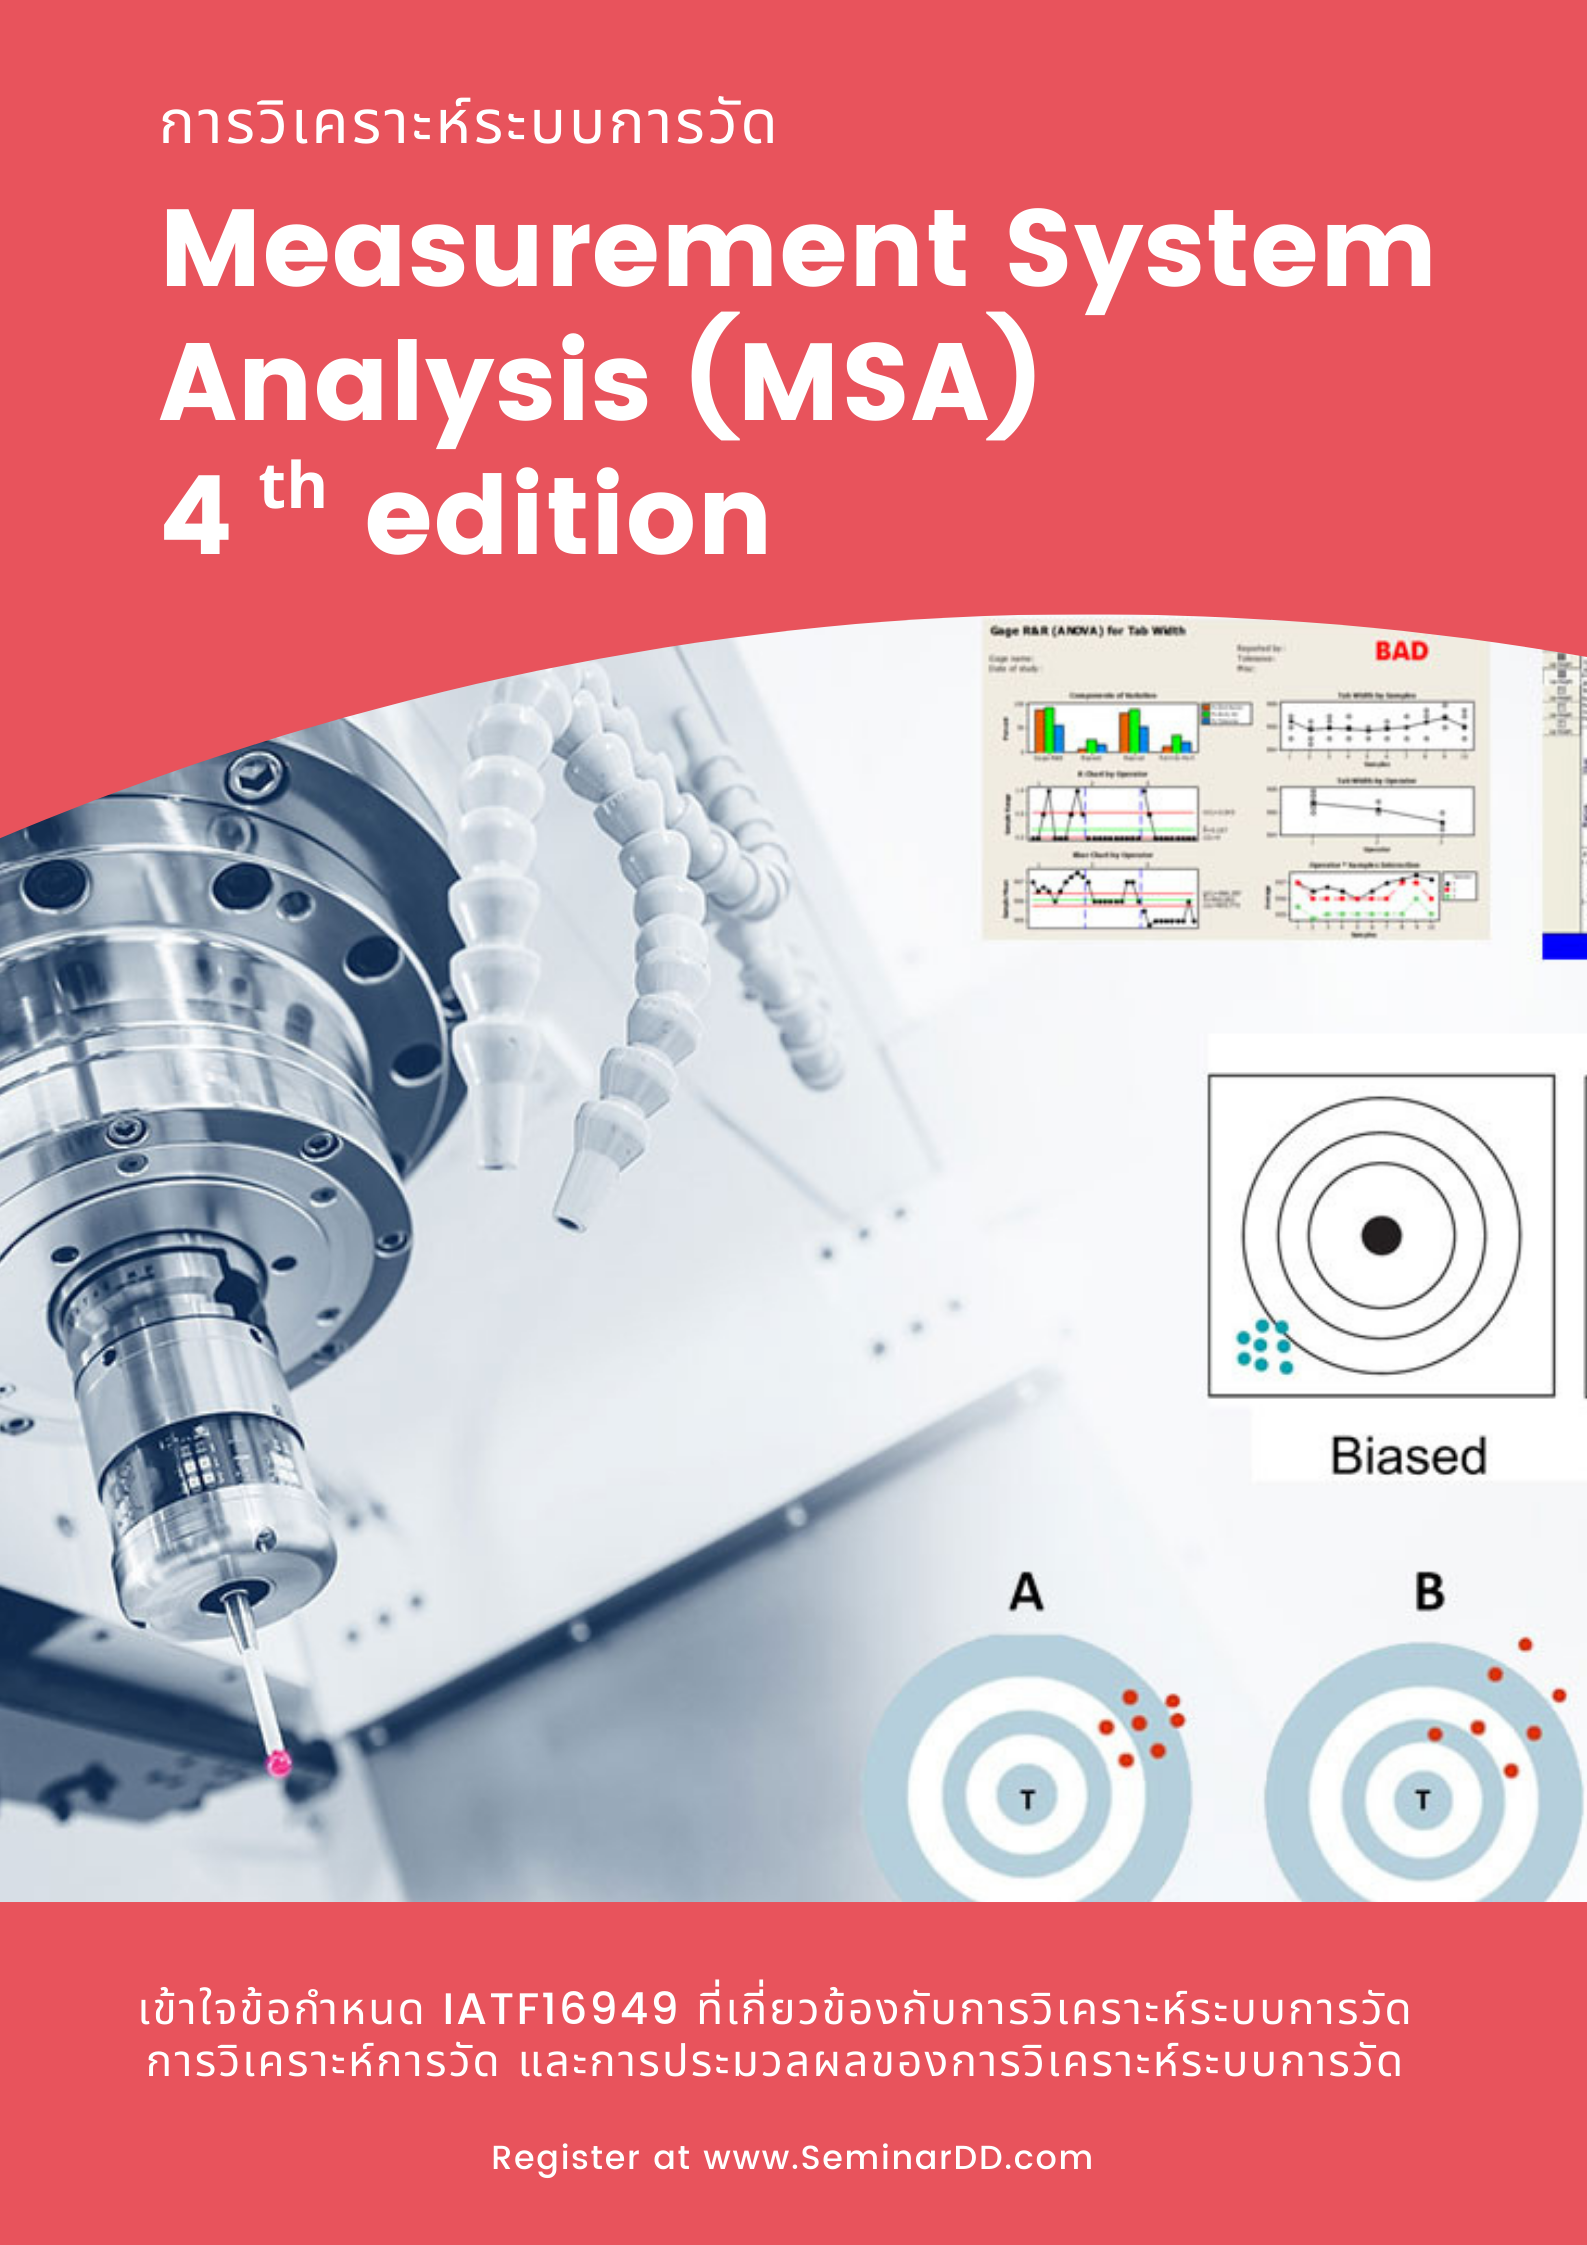 หลักสูตรอบรม หลักสูตร การวิเคราะห์ระบบการวัด (Measurement System Analysis 4th edition - MSA)